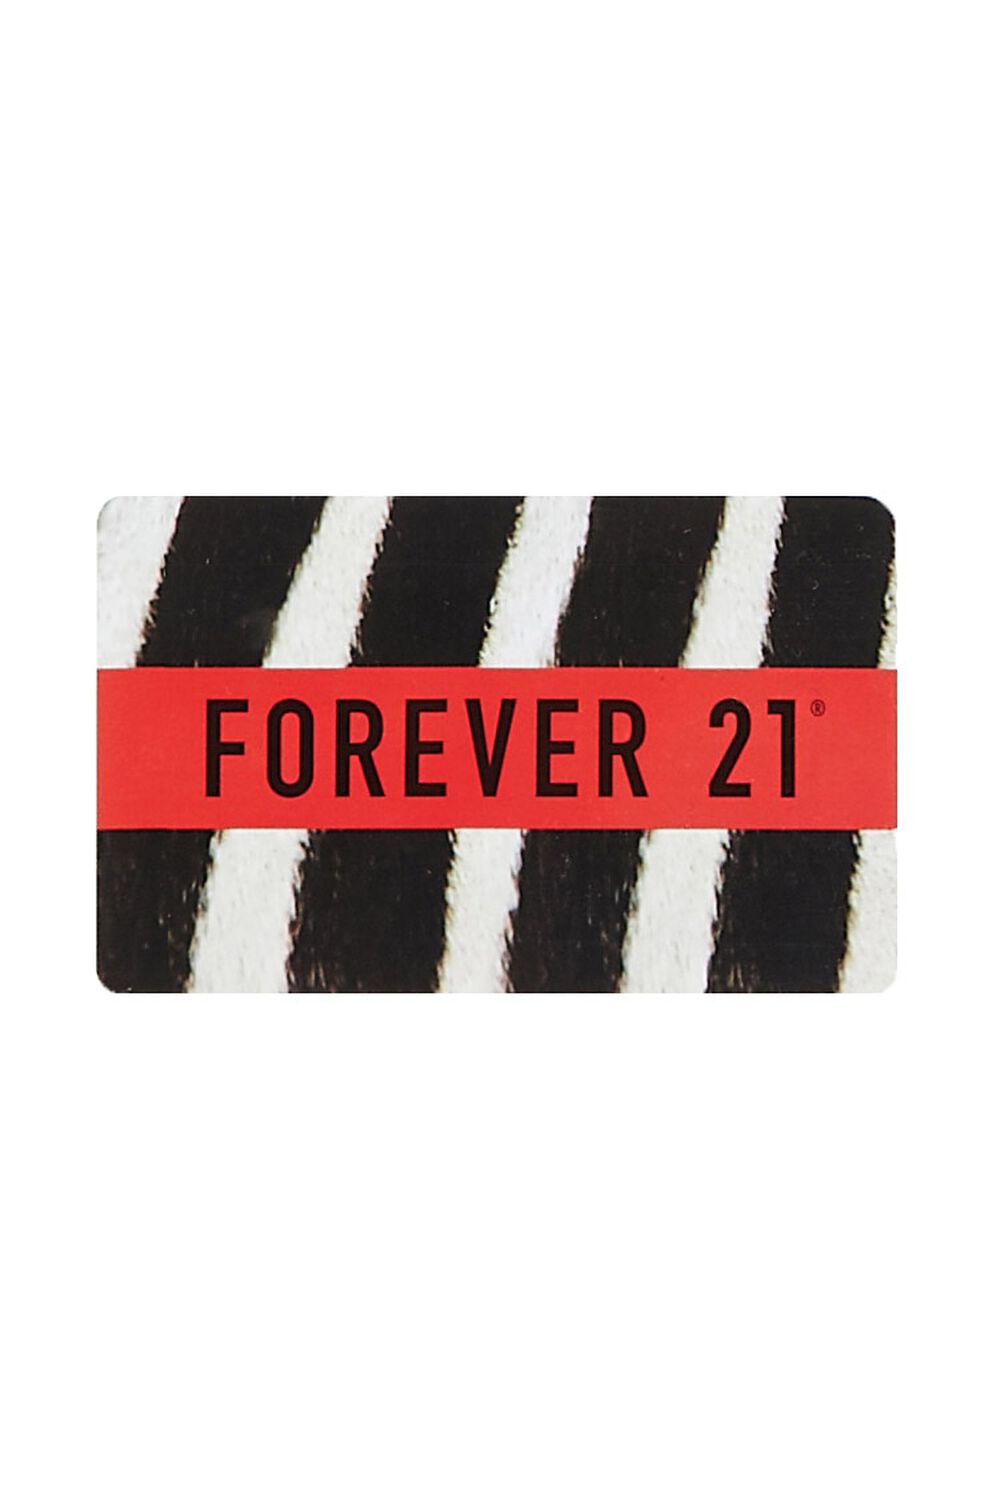 ZEBRA/ORANGE Forever 21 Gift Card, image 1